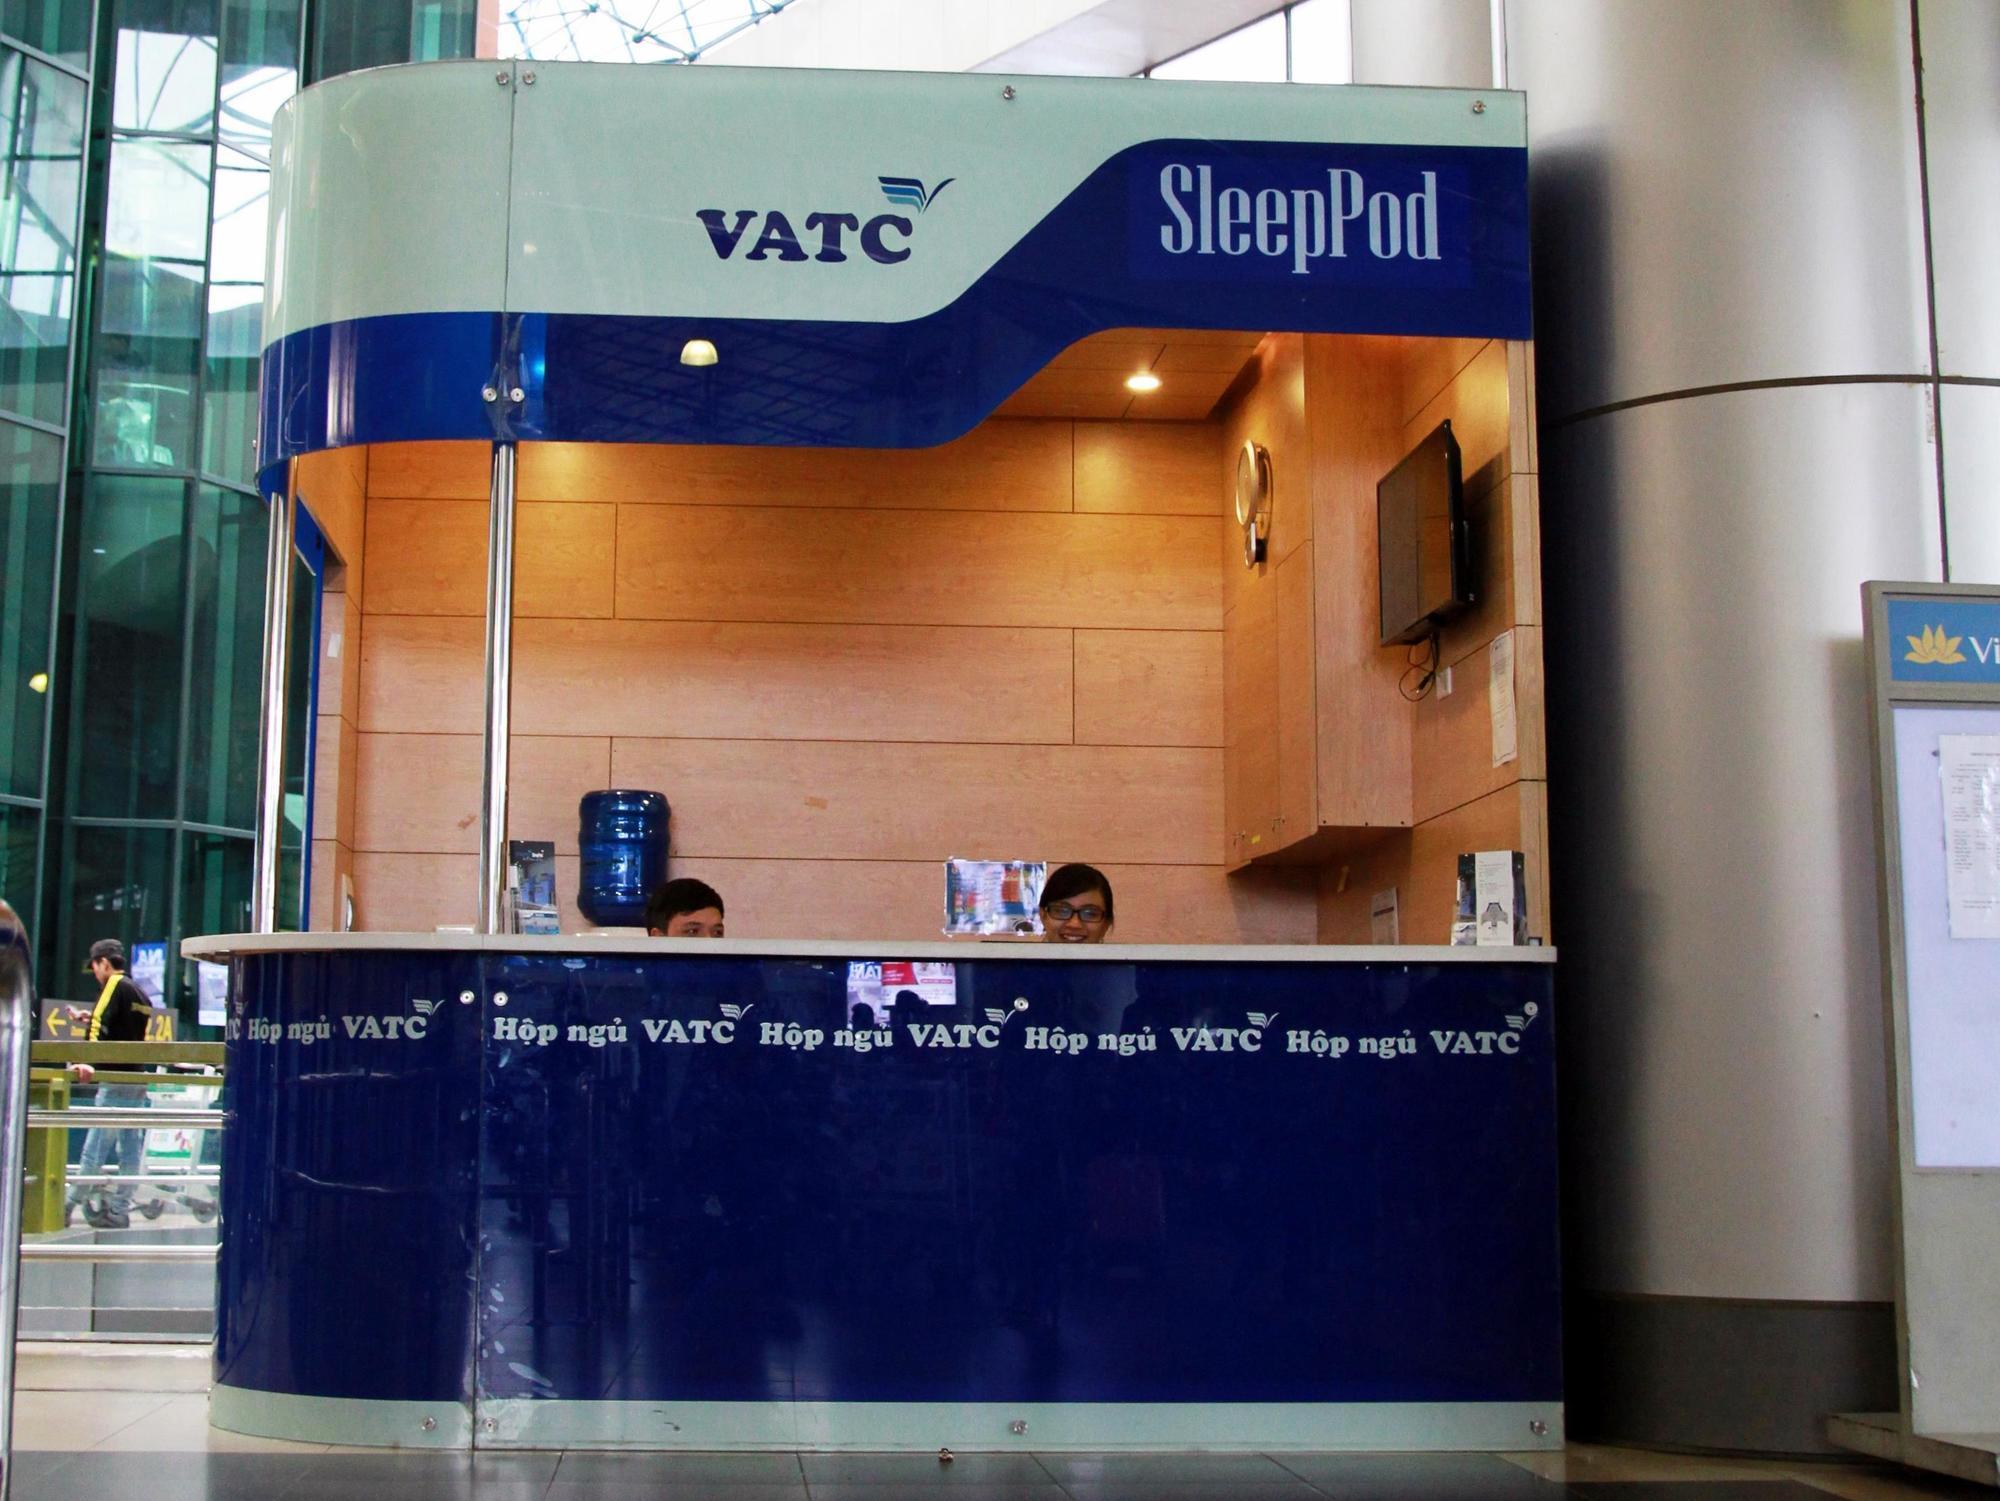 Отель Vatc Sleep Pod Terminal 1 Нойбай Экстерьер фото